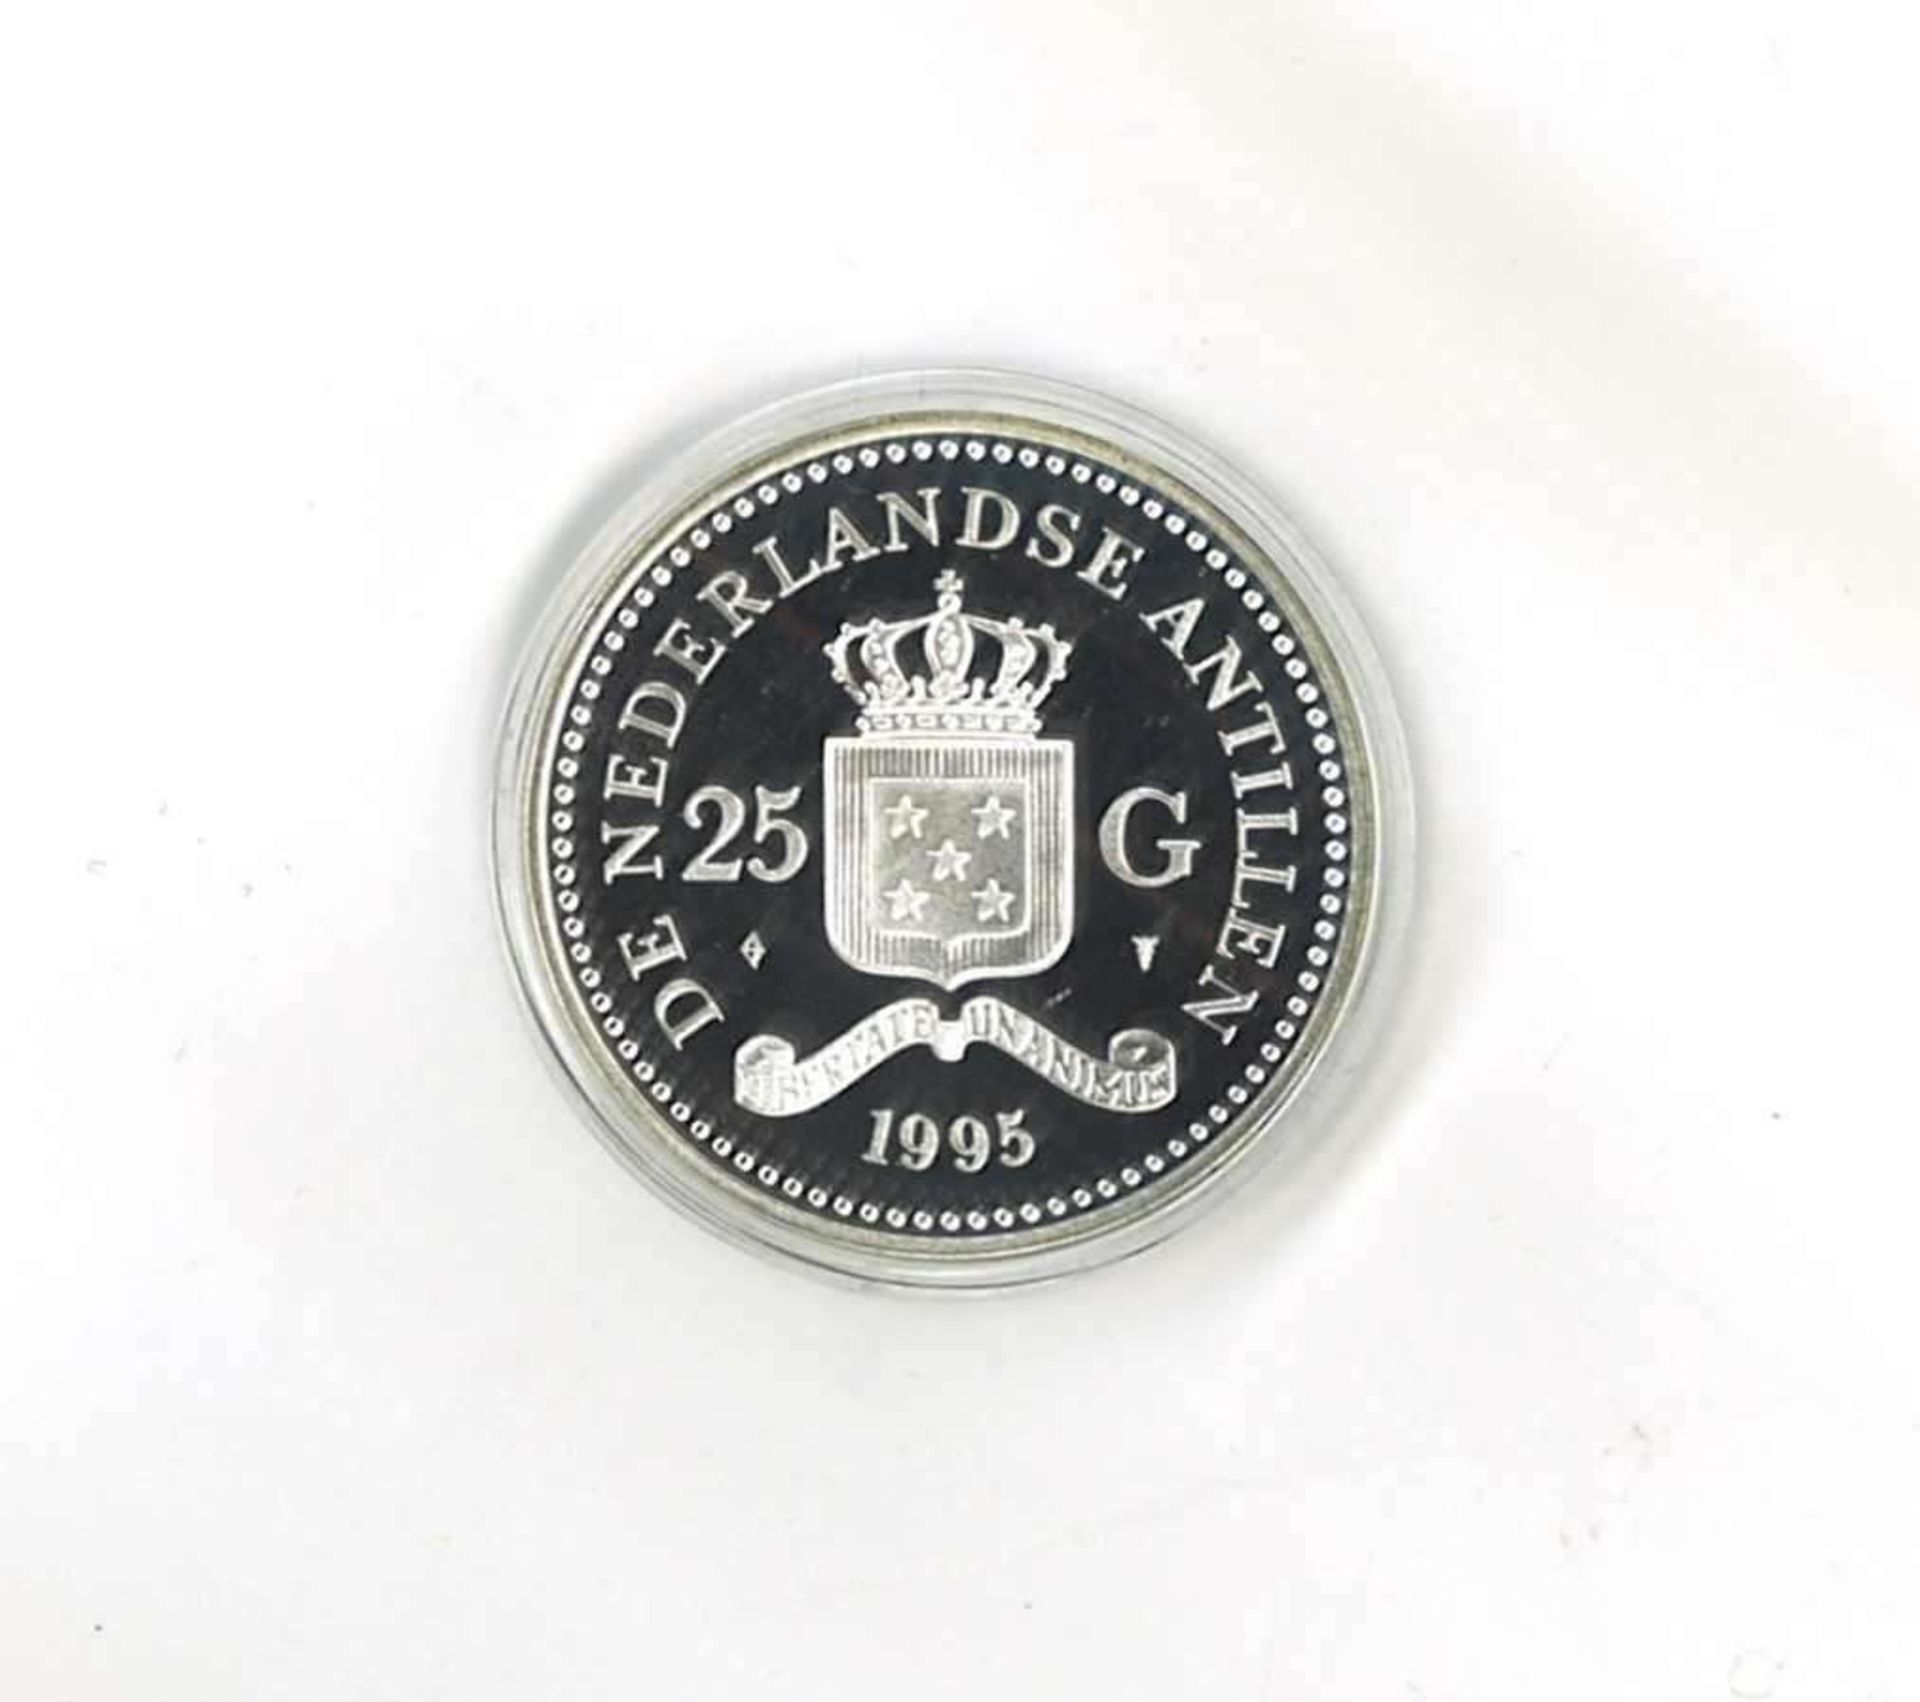 Olympische Spiele, Niederländische Antillen, 925/1000 Silber. 25 Gulden, Gewichtheben. Mit Zertifi - Image 2 of 2